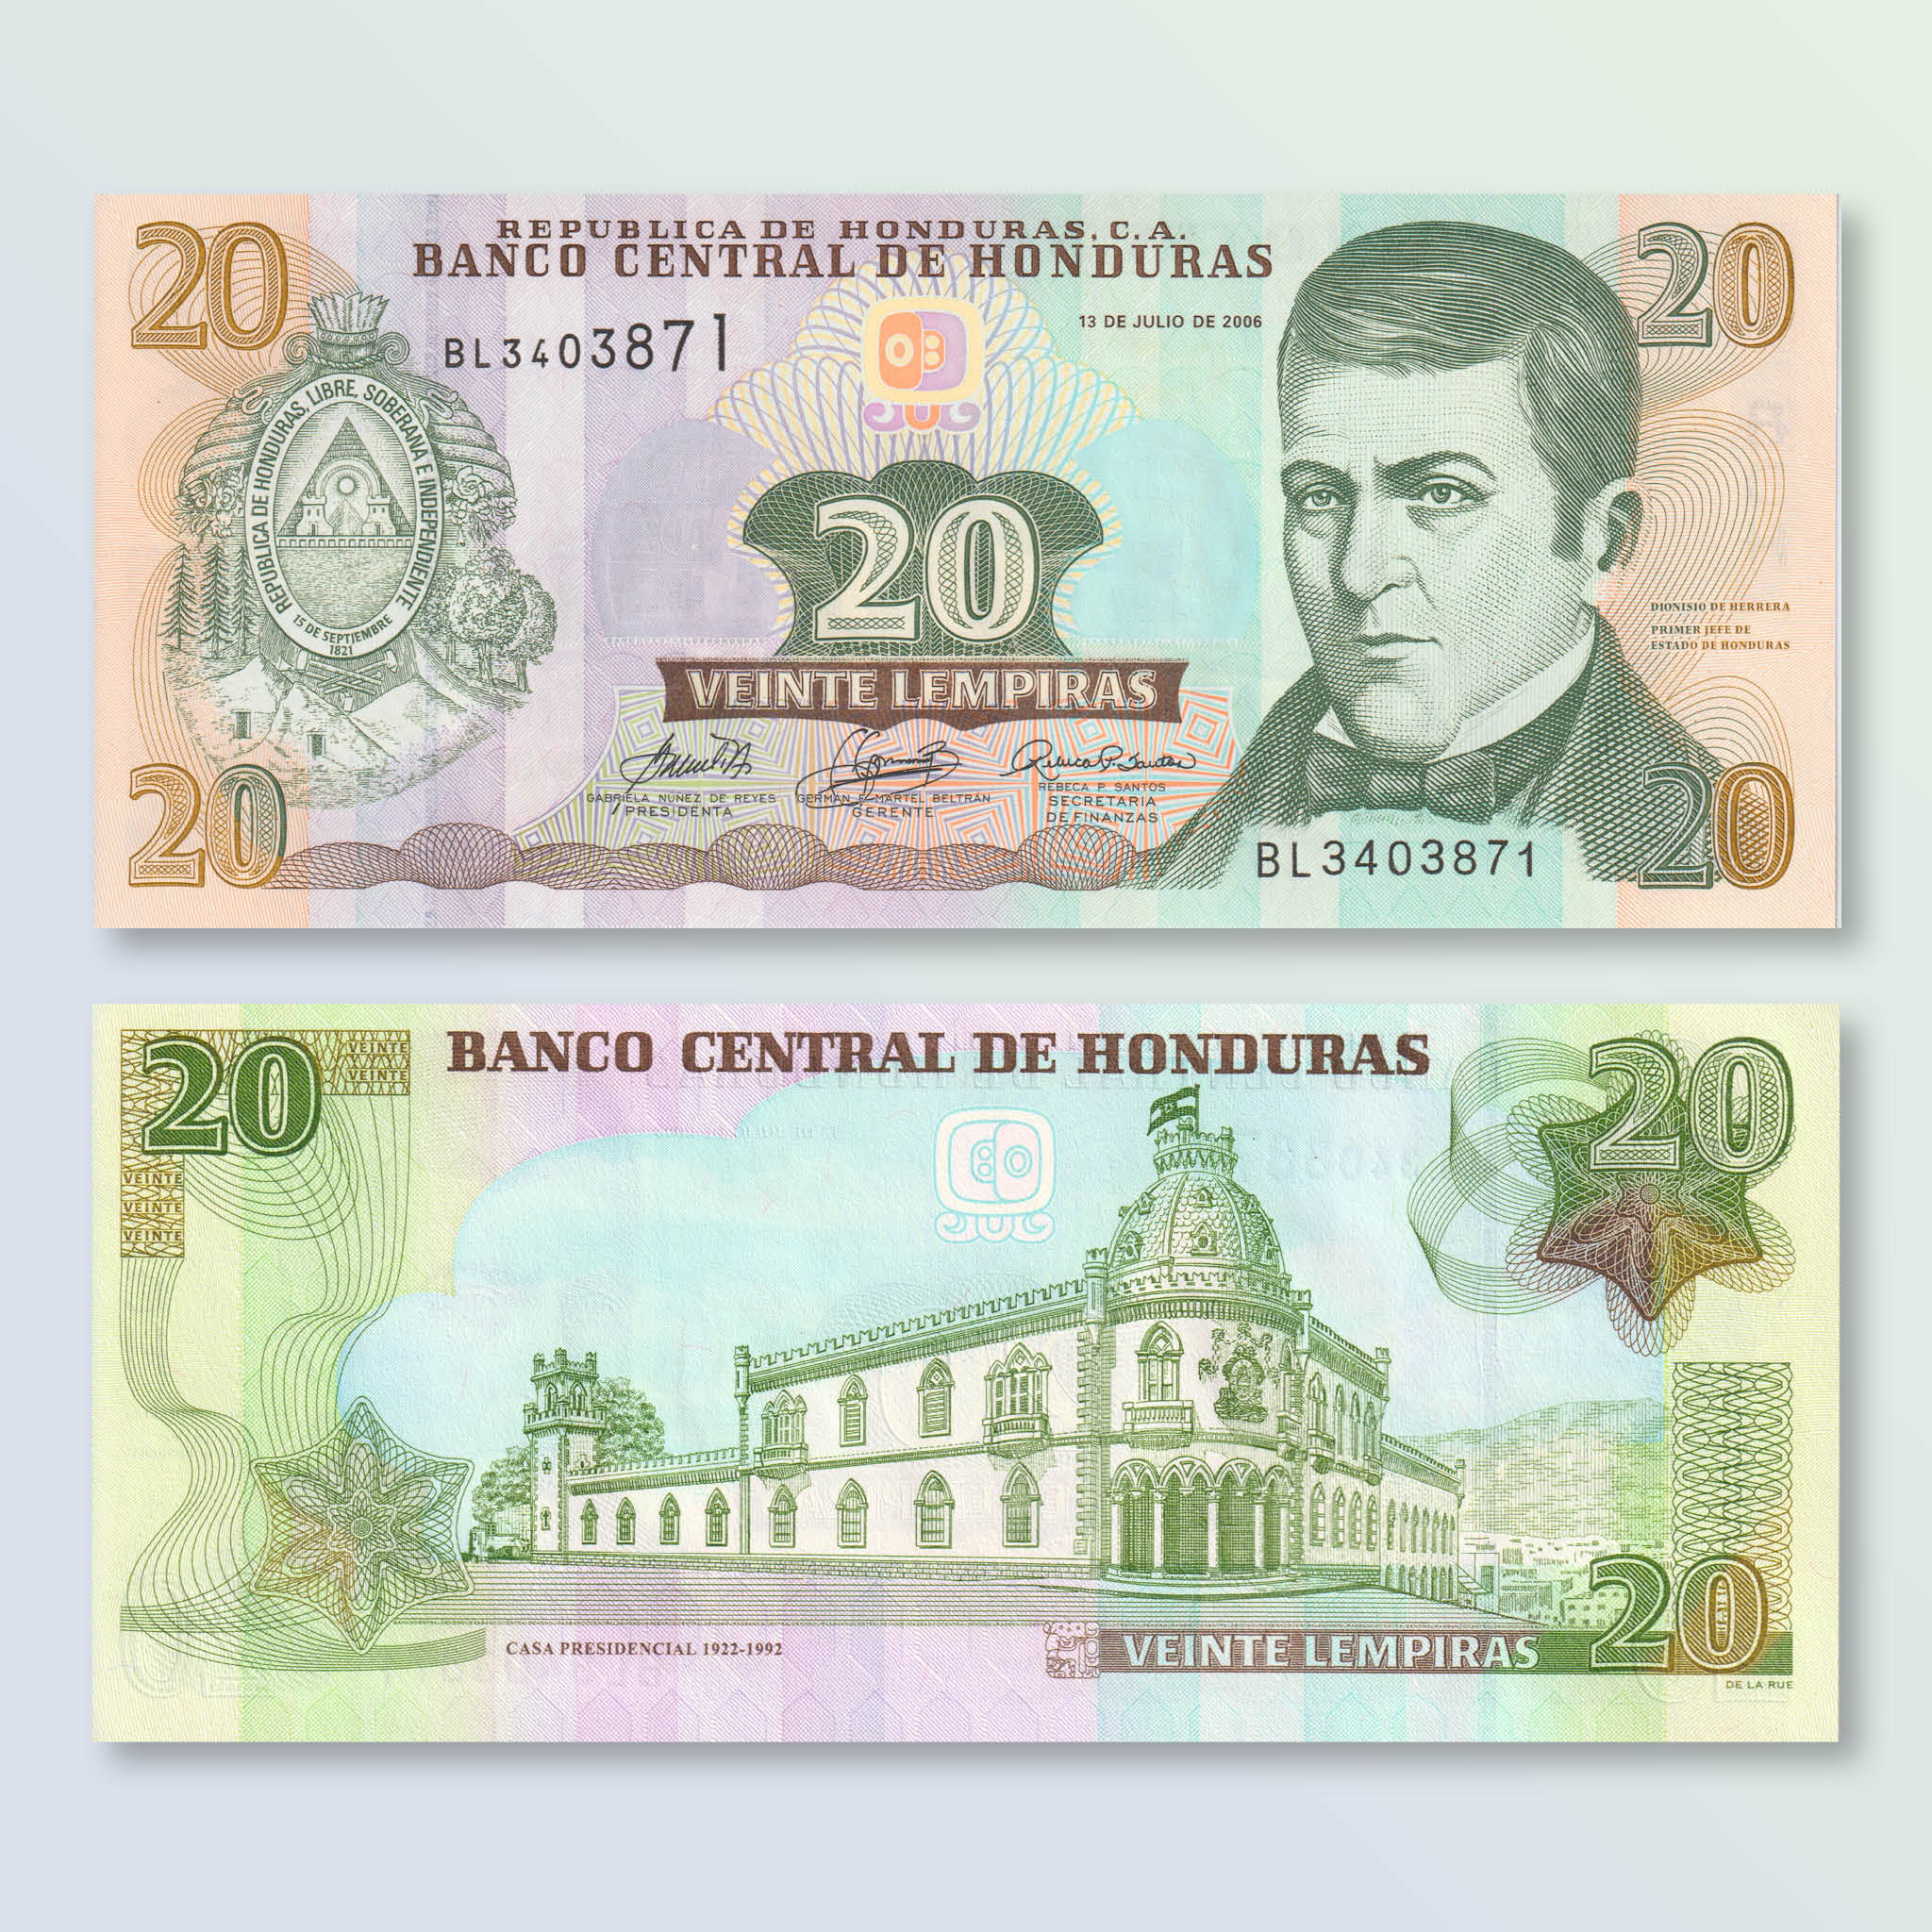 Honduras 20 Lempiras, 2006, B339b, P93, UNC - Robert's World Money - World Banknotes